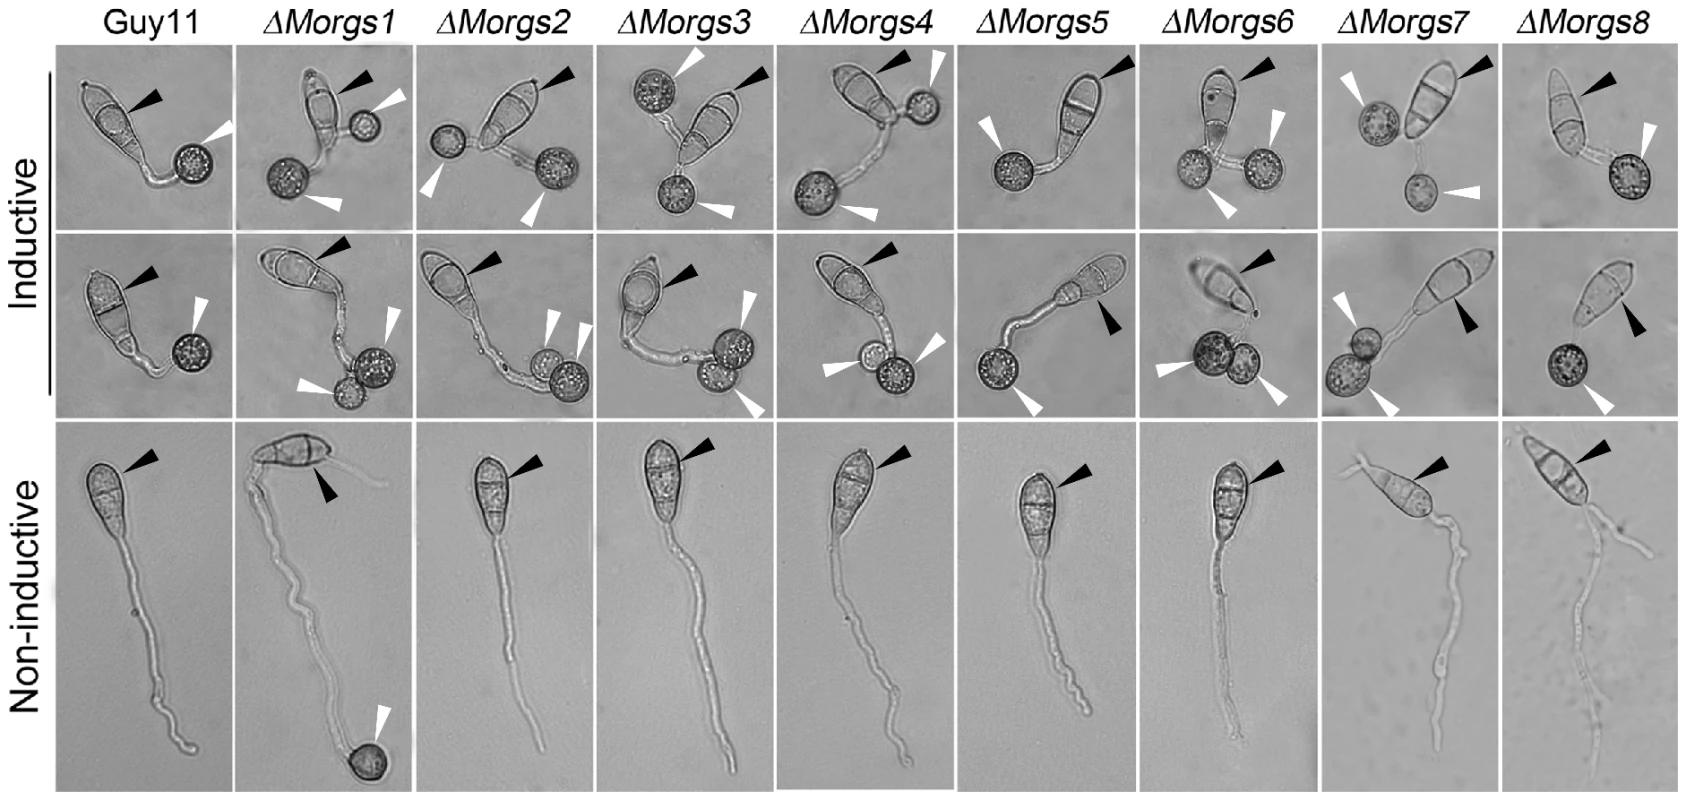 Comparison of Δ<i>Morgs</i> mutant strains in appressorium formation.